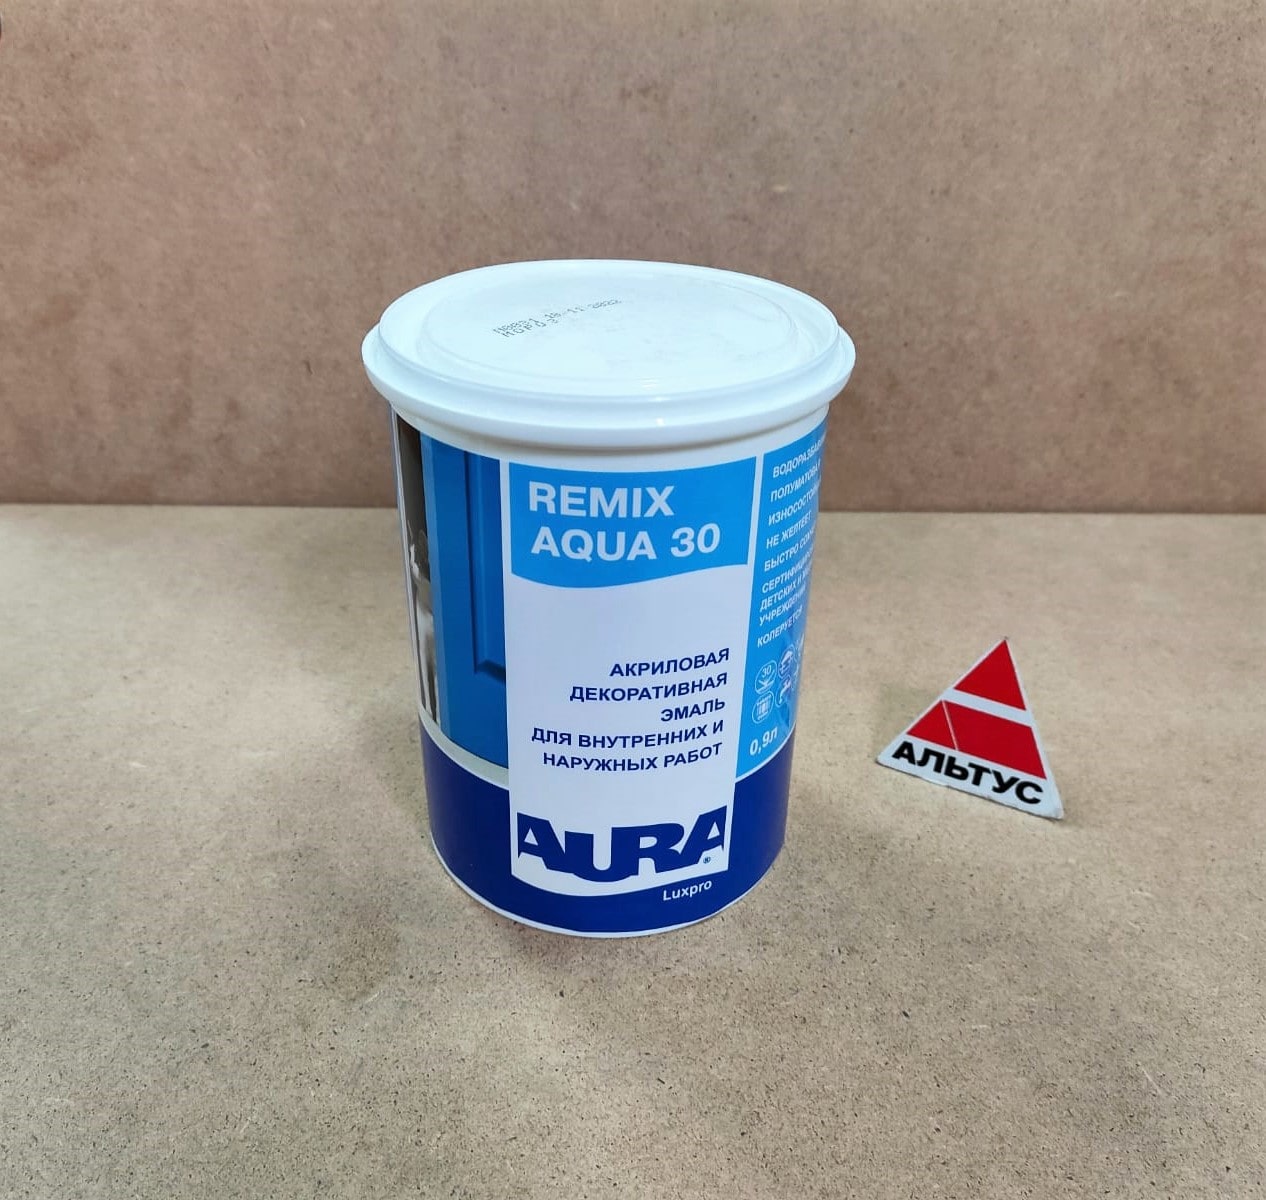 Акриловая декоративная эмаль AURA Luxpro Remix Aqua 30 0,9 л